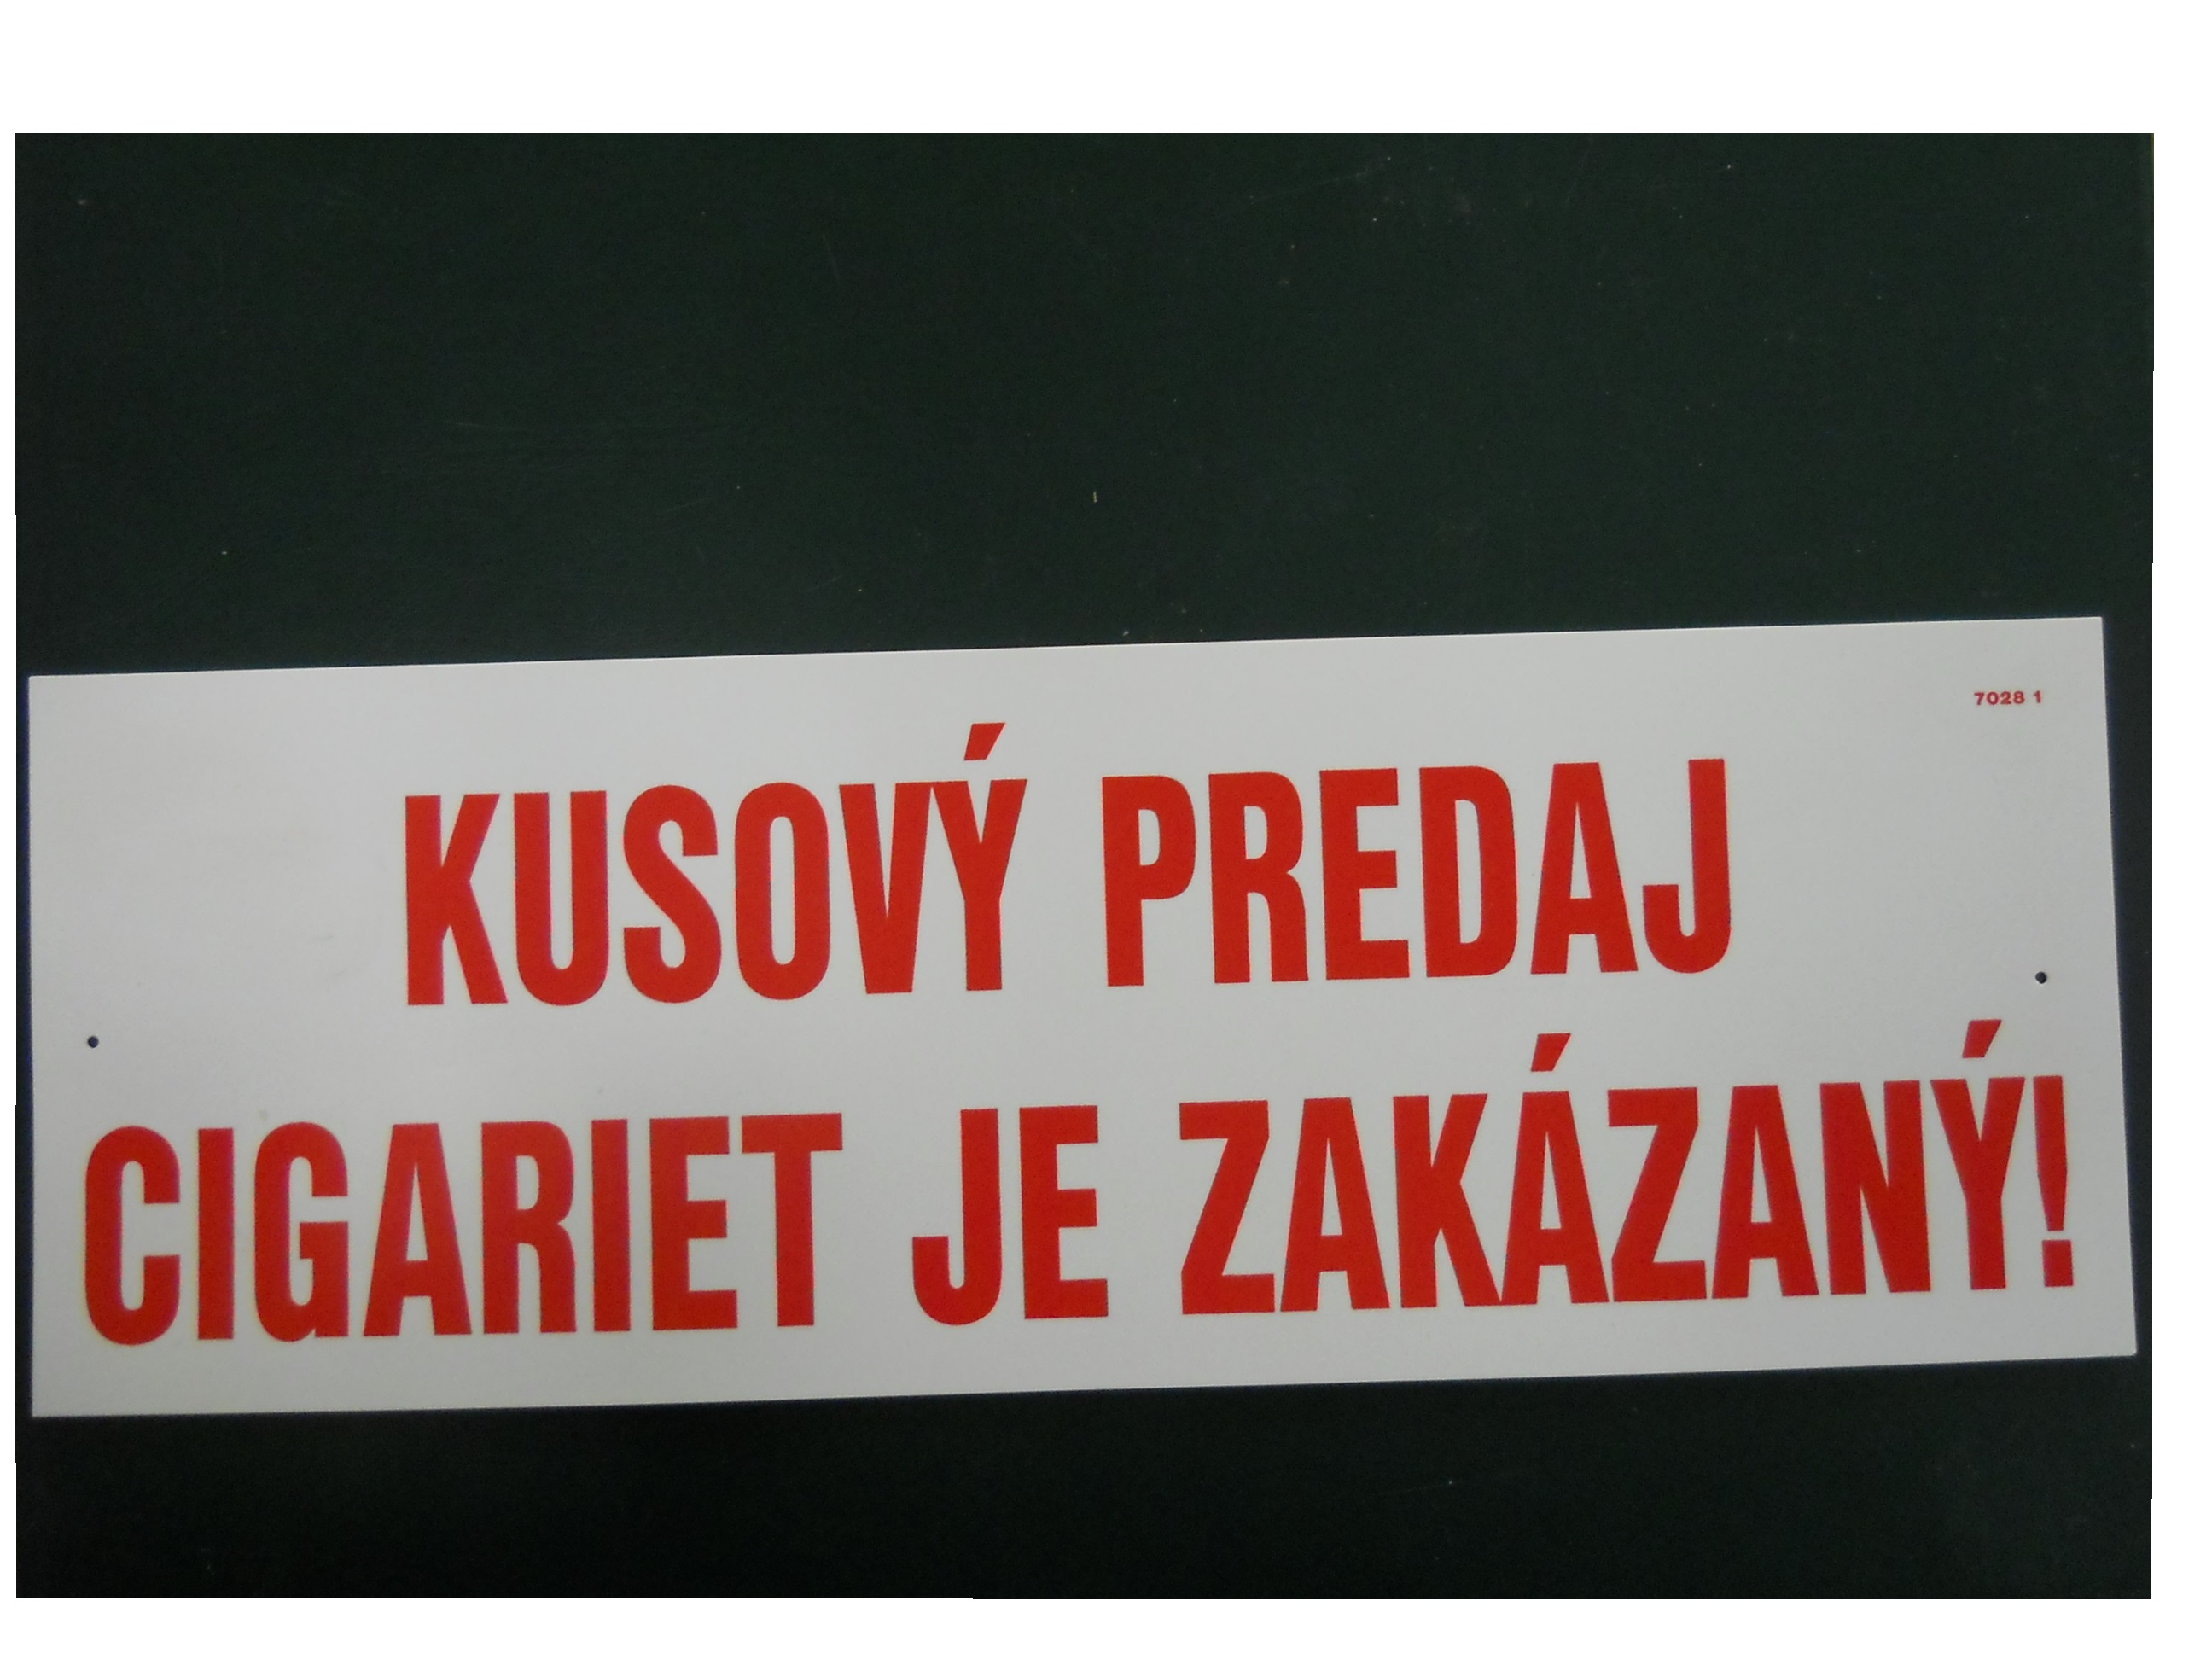 Bezpečnostná plast.tabuľka Kusový predaj cigariet je zakázaný!,10 x 29,5 cm